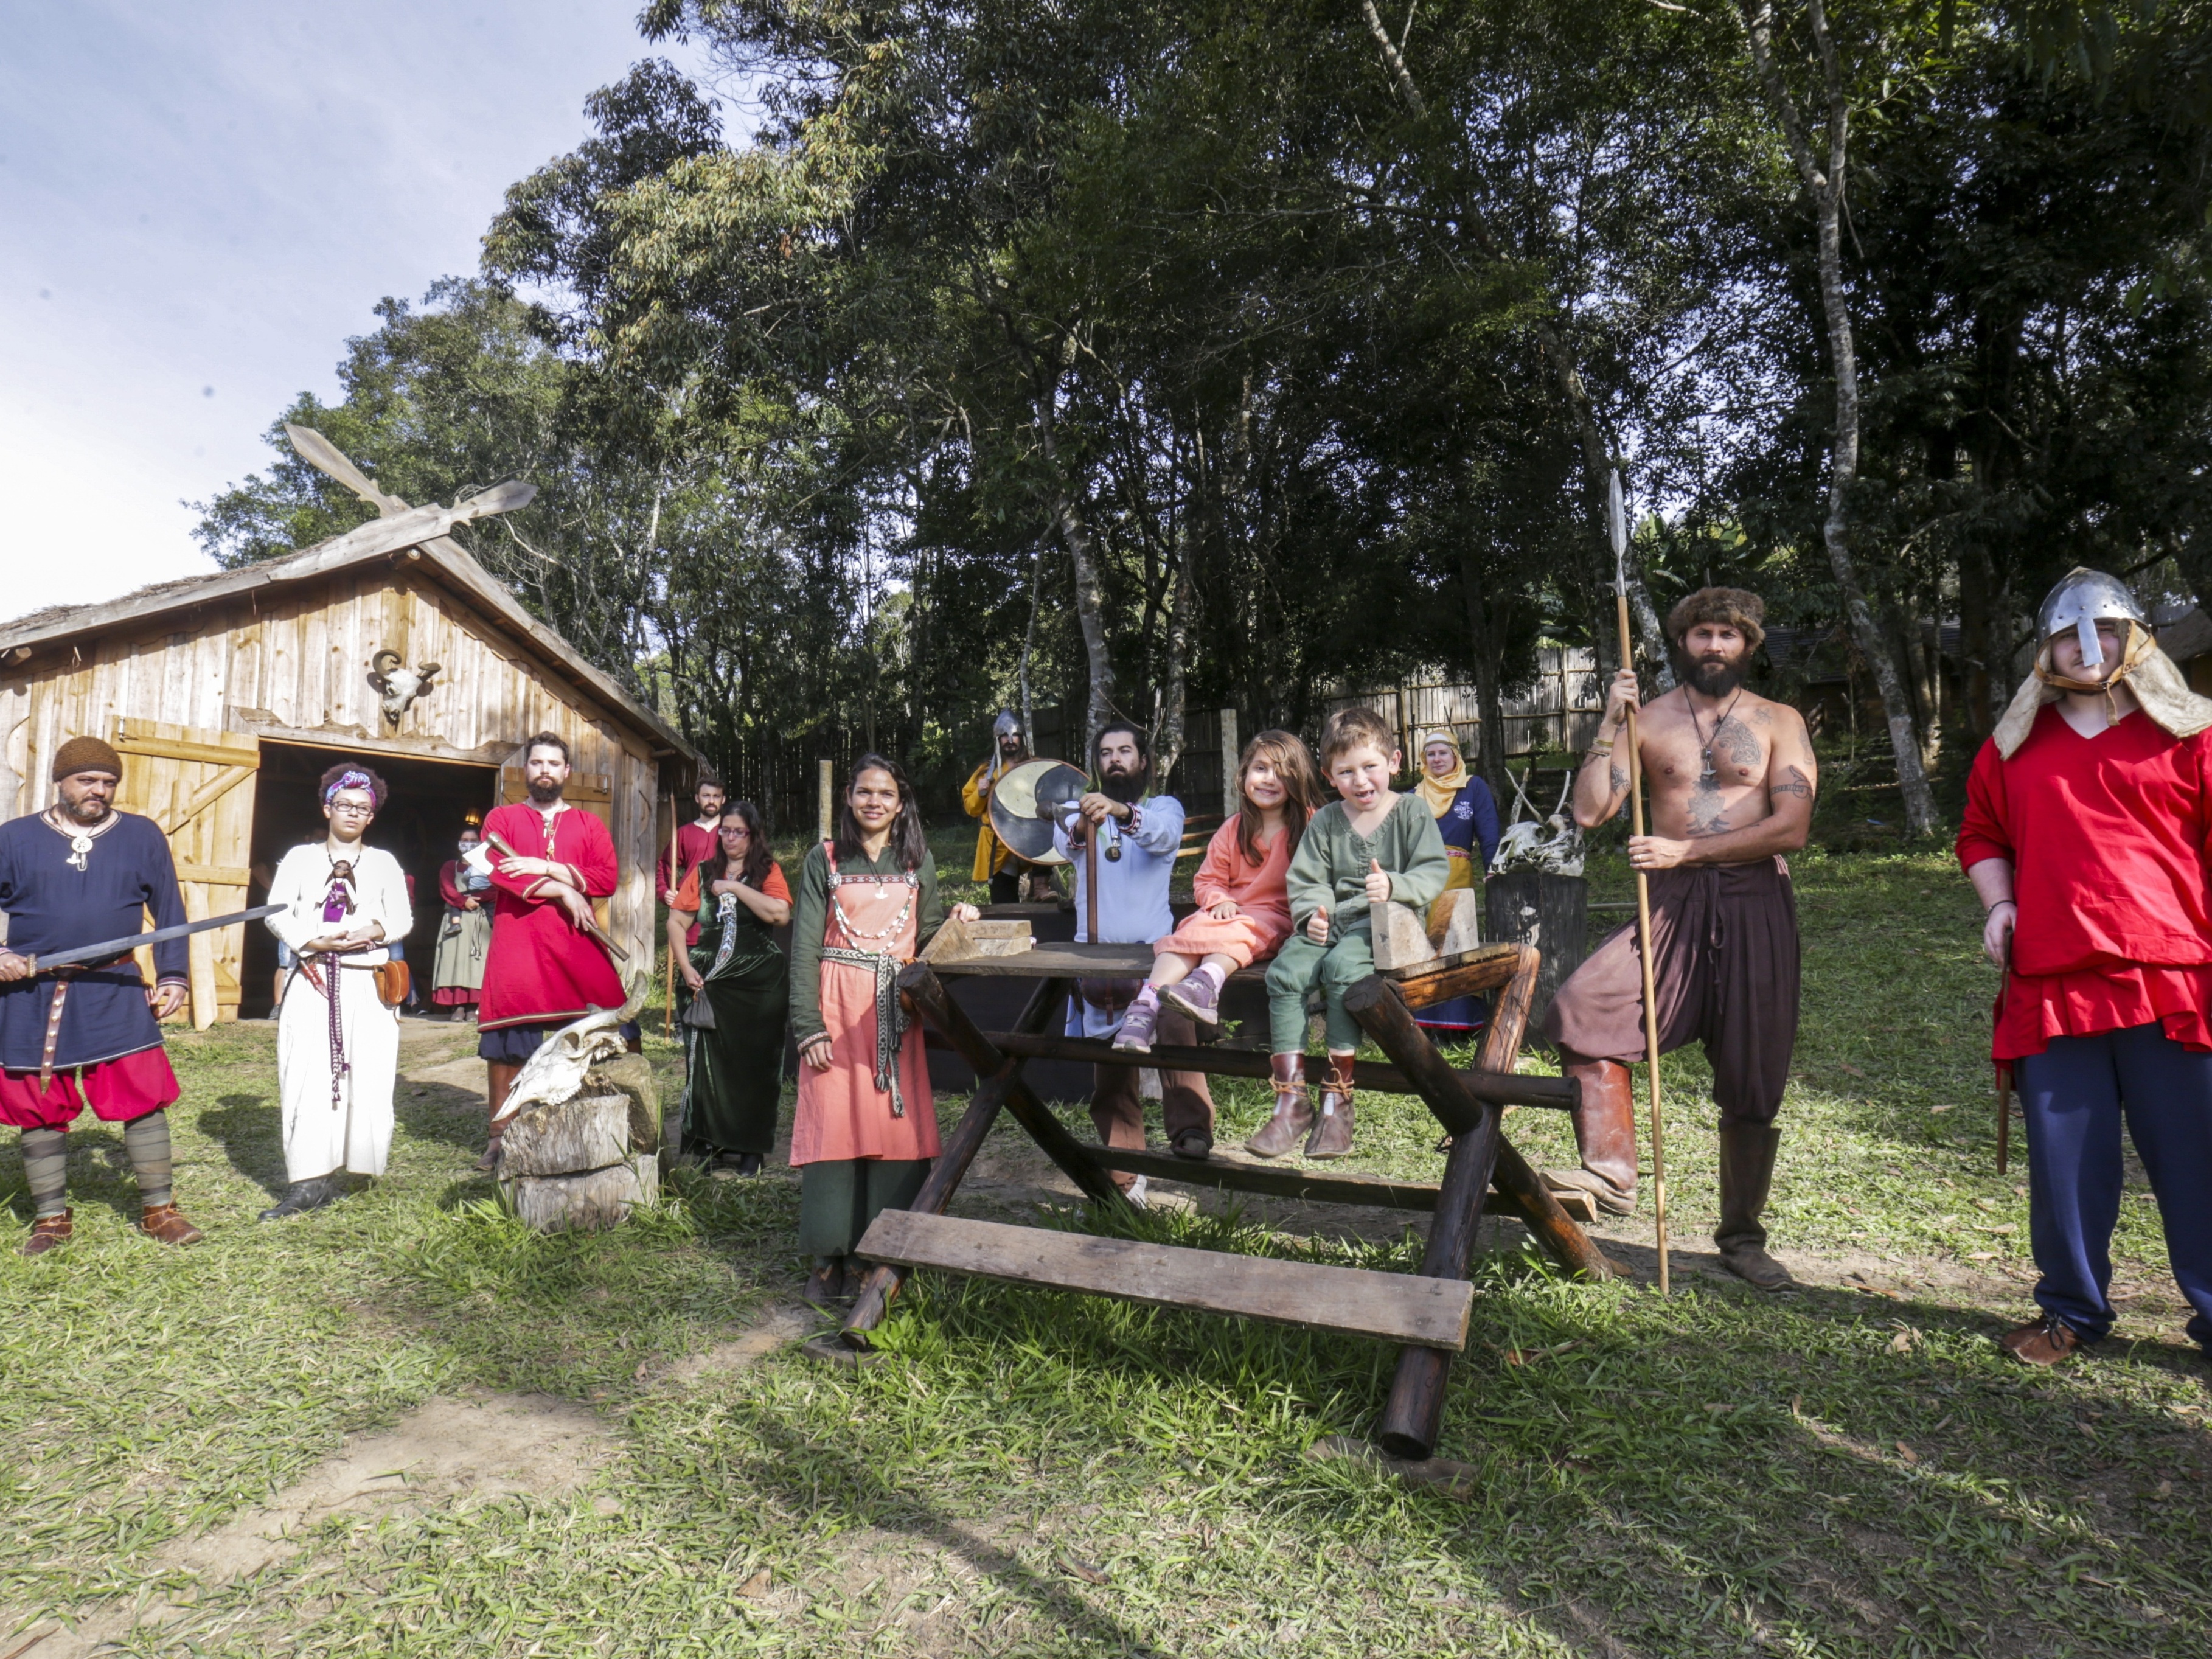 Fantasia de Vikings para o Carnaval - Seriado - Como fazer em casa